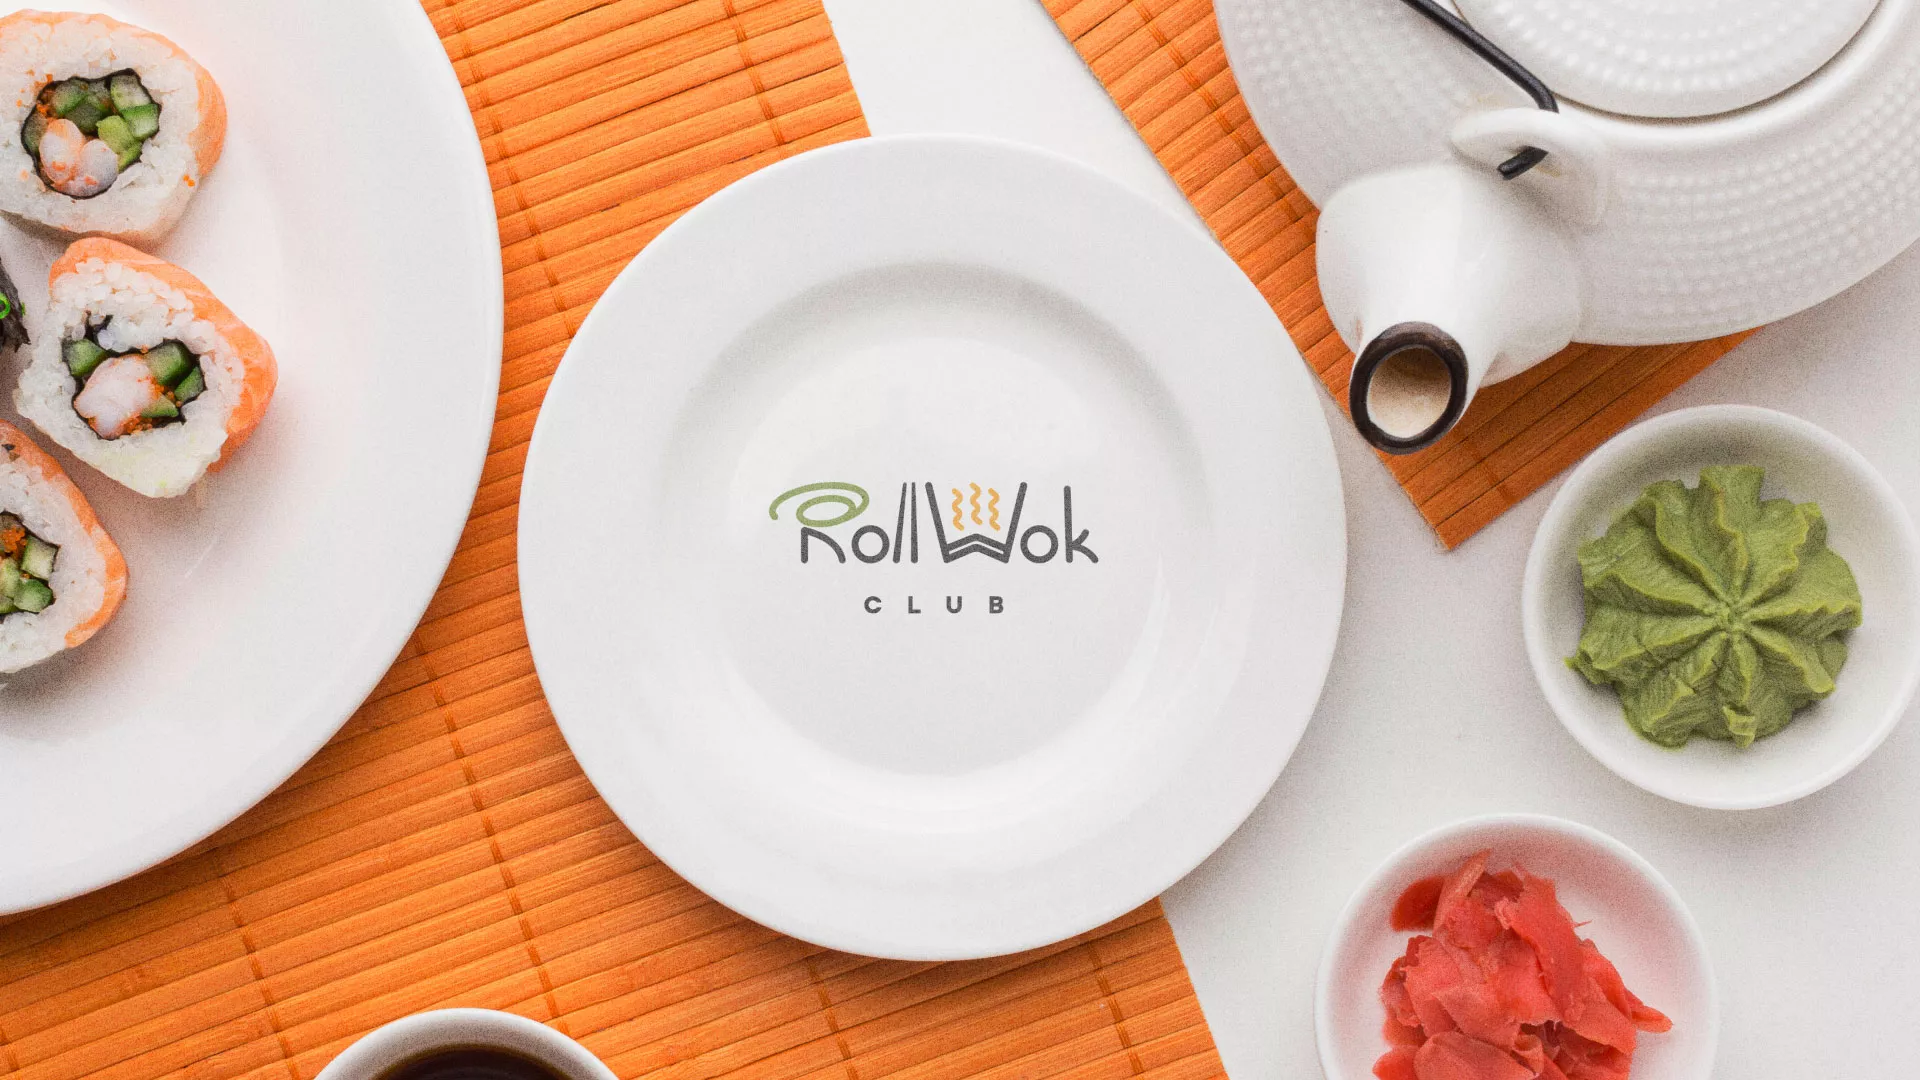 Разработка логотипа и фирменного стиля суши-бара «Roll Wok Club» в Себеже